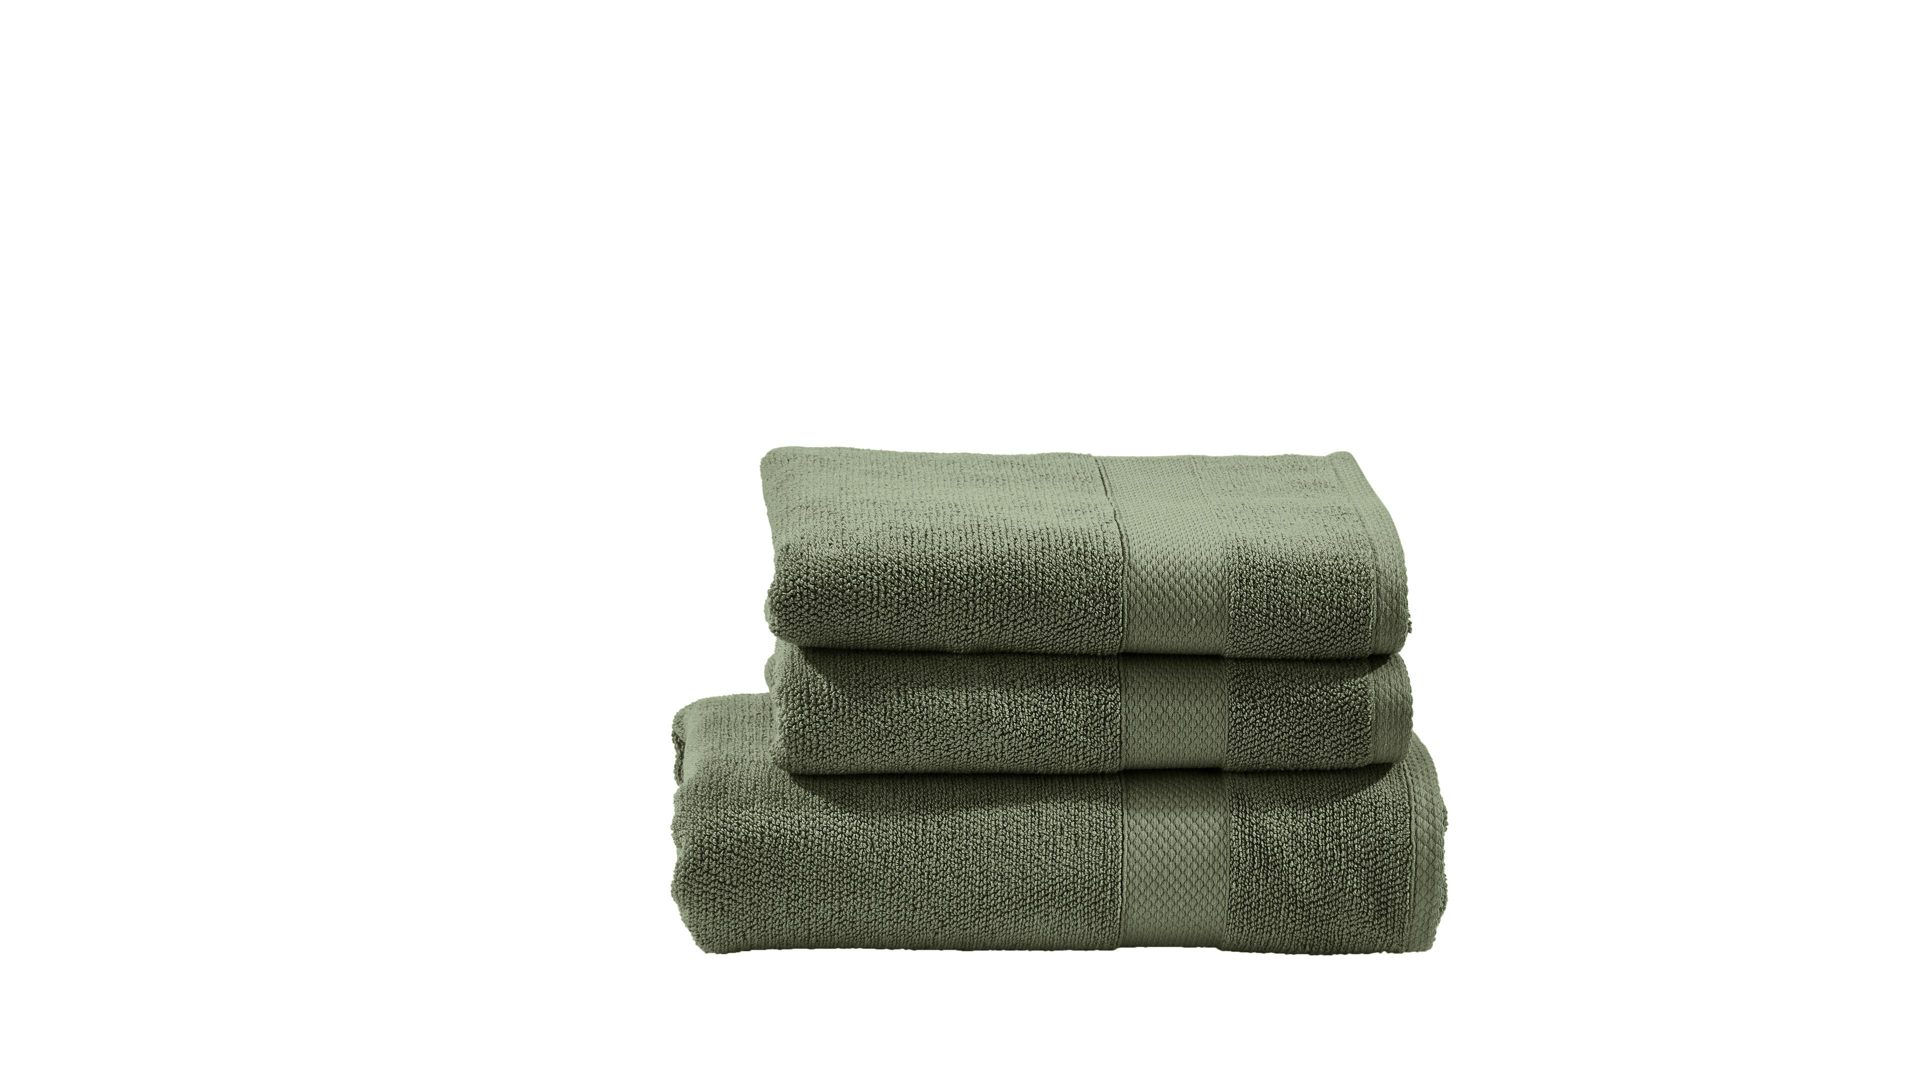 Handtuch-Set Done® by karabel home company aus Stoff in Dunkelgrün DONE® Handtuch-Set Deluxe für Ihre Heimtextilien khakifarbene Baumwolle  – dreiteilig